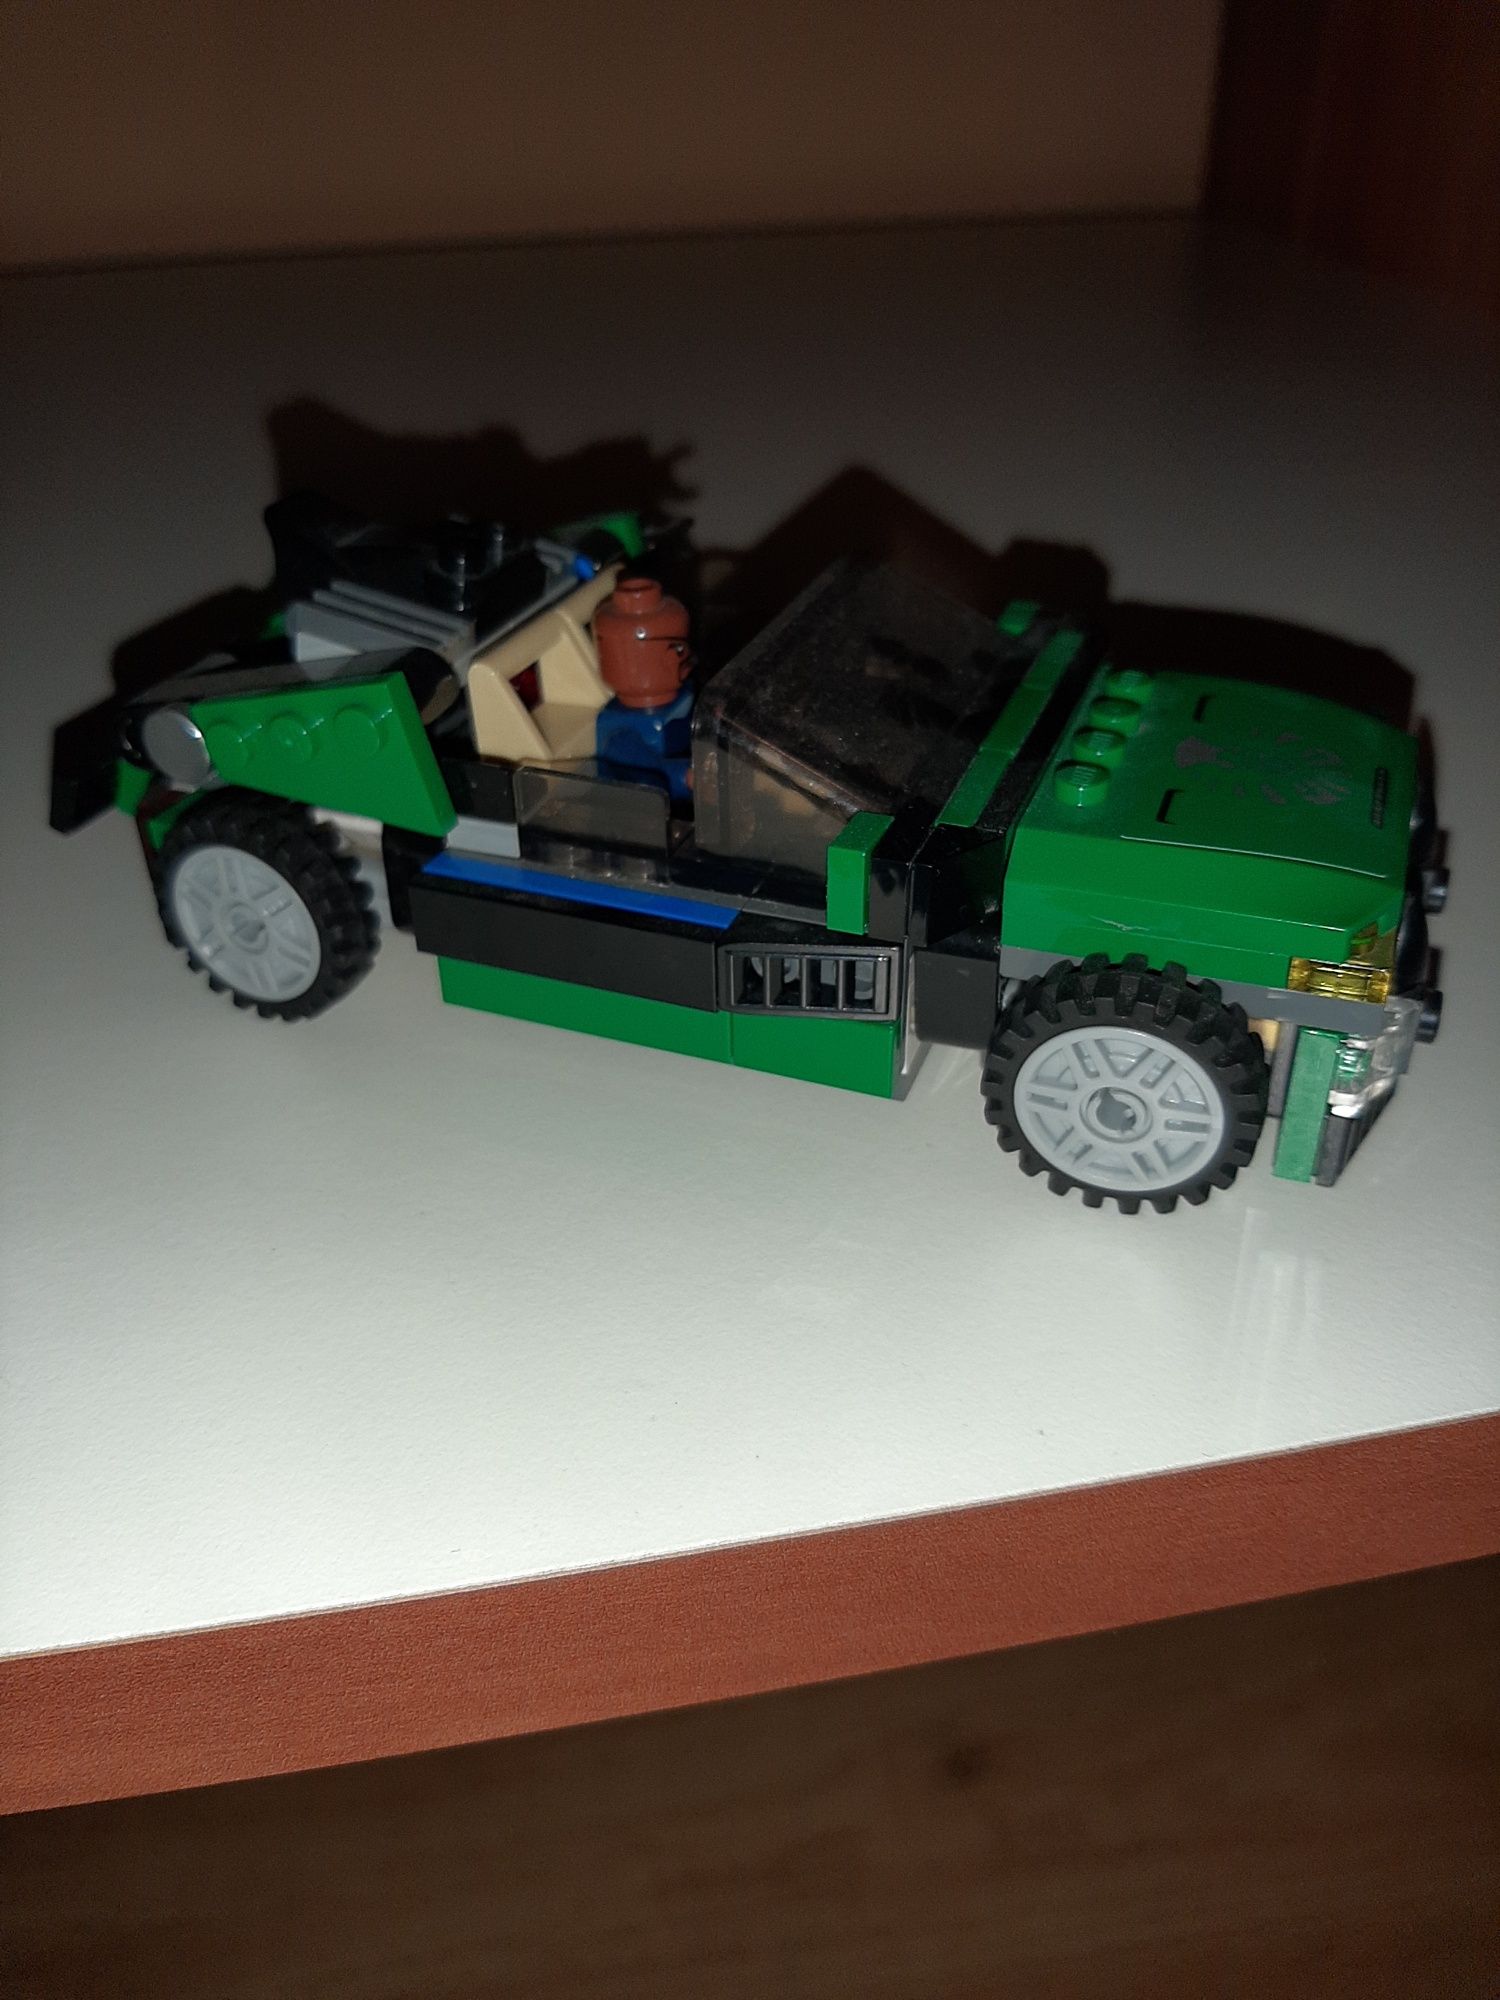 Vand set LEGO cu Masina lui Nick Furry si Motocicleta lui Spiderman.